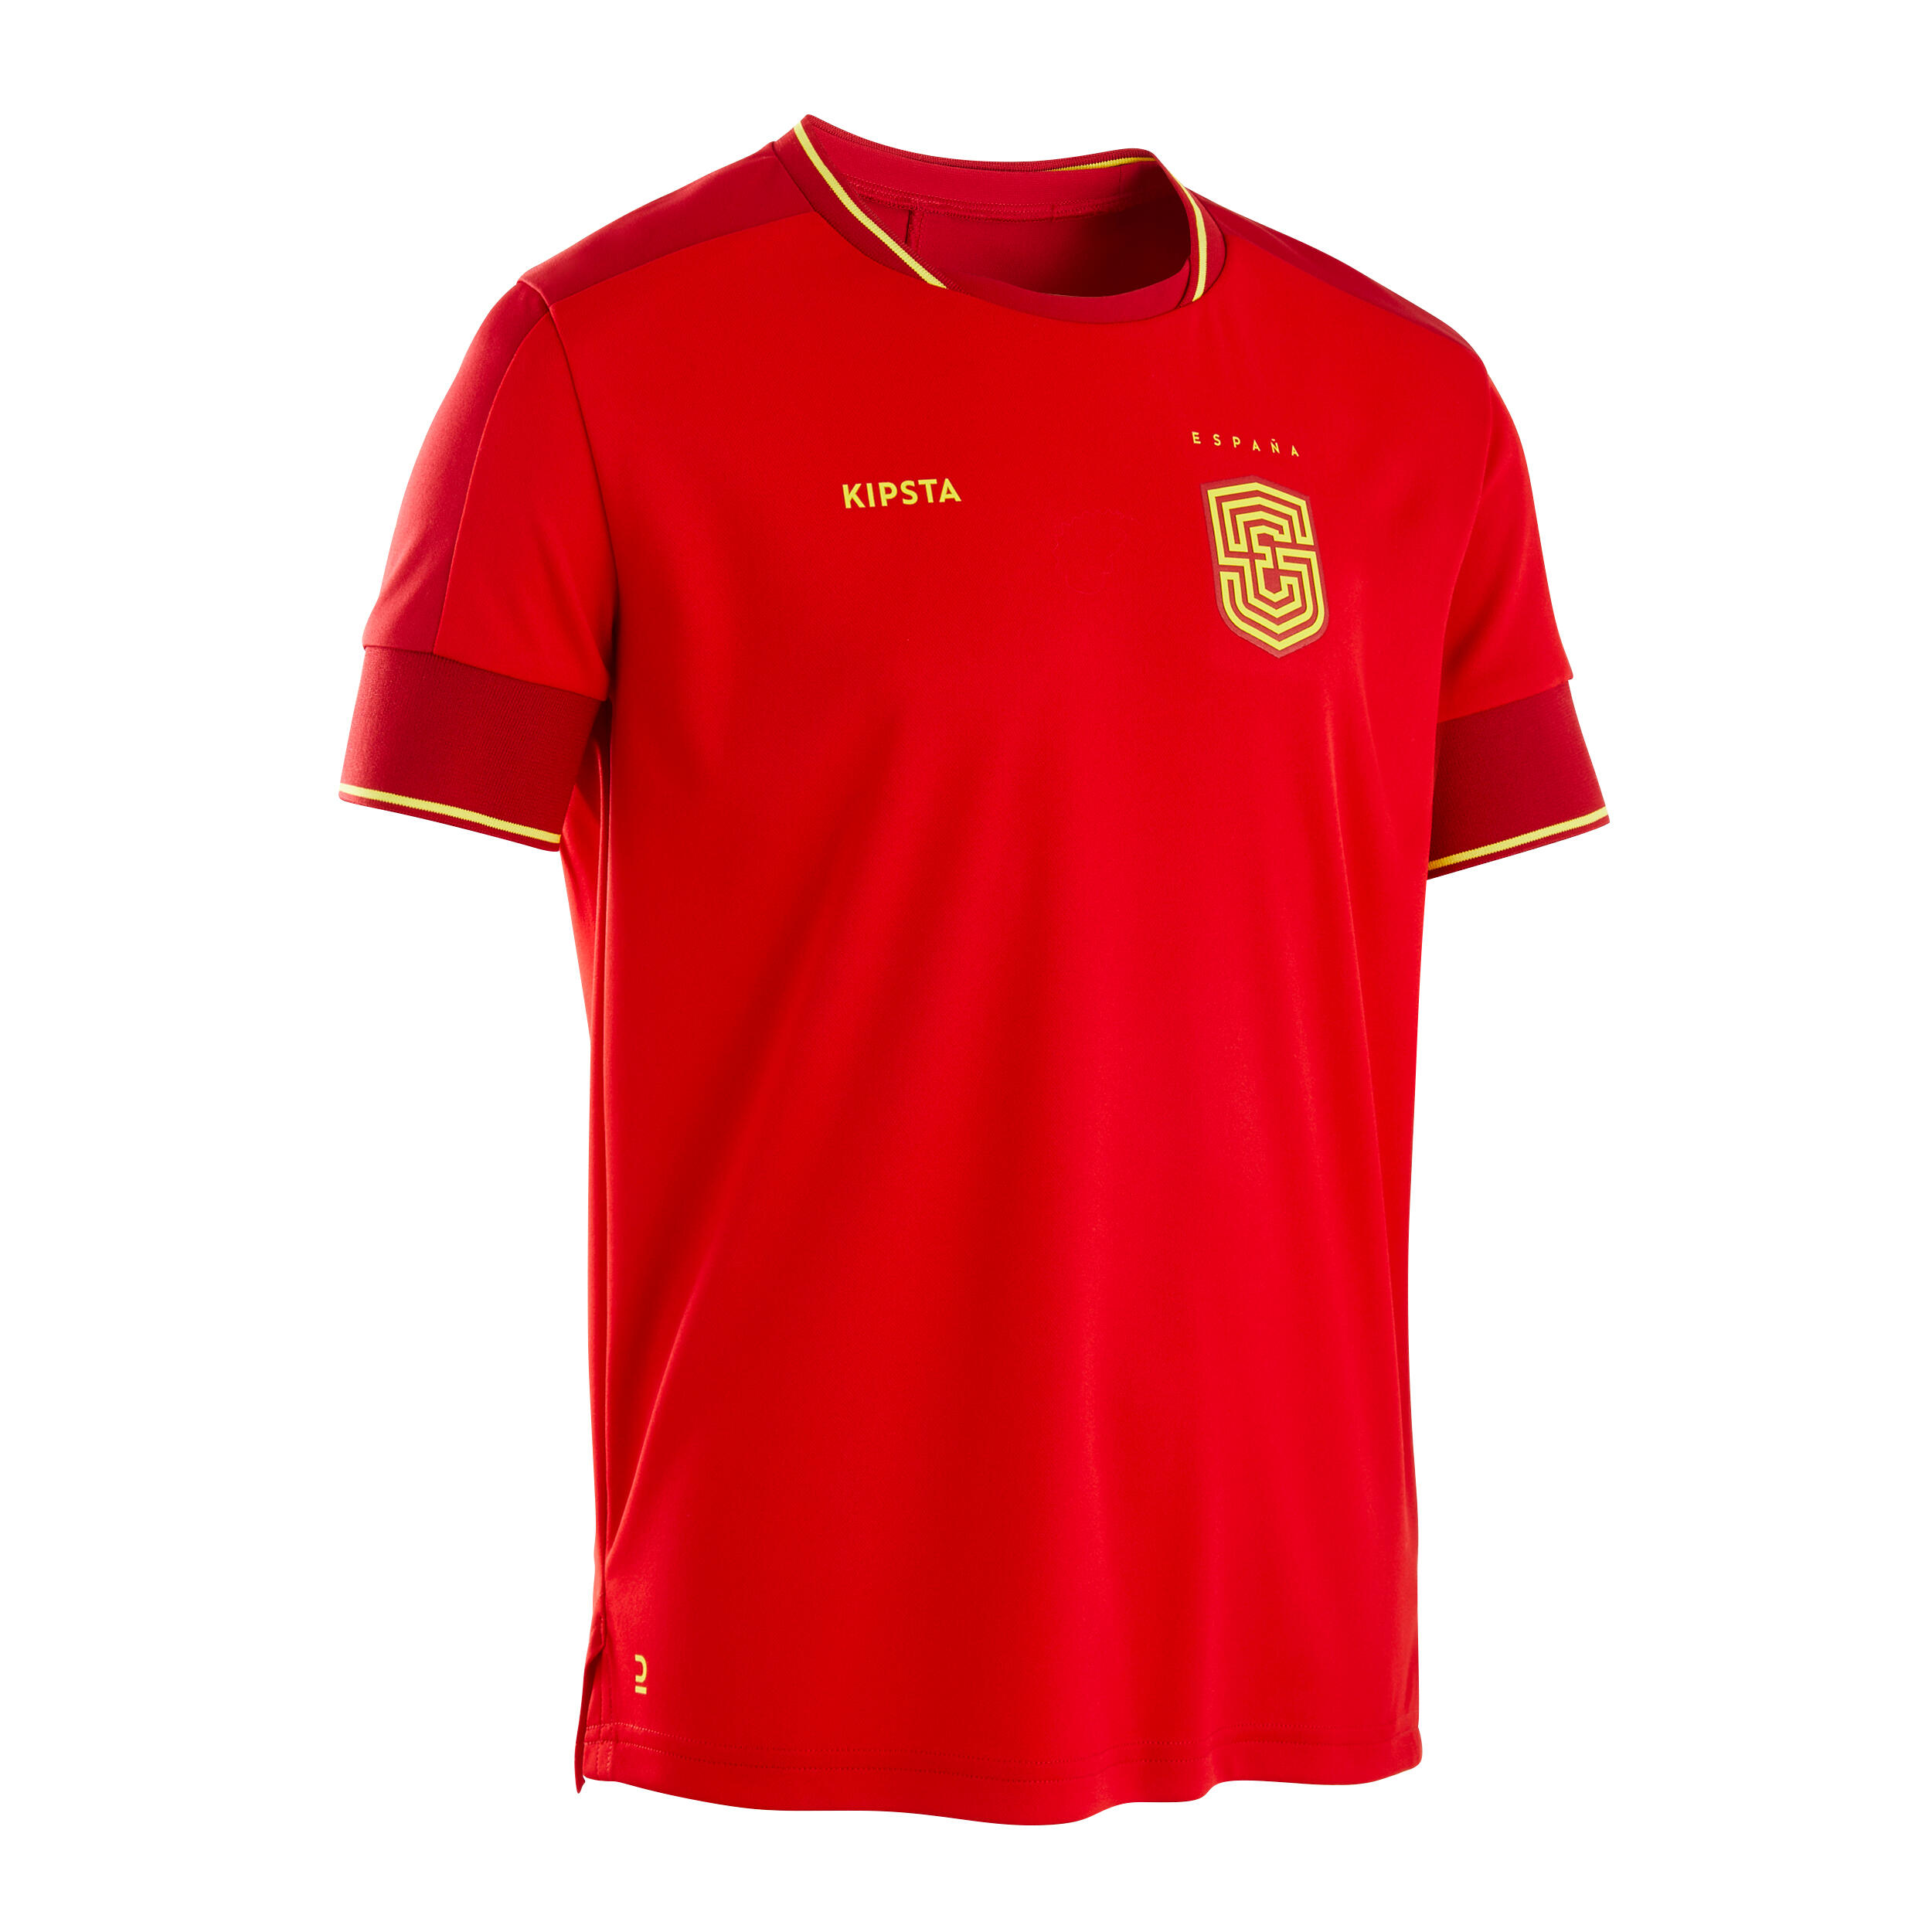 ADIDAS Camiseta De Fútbol España Local Hombre Adidas